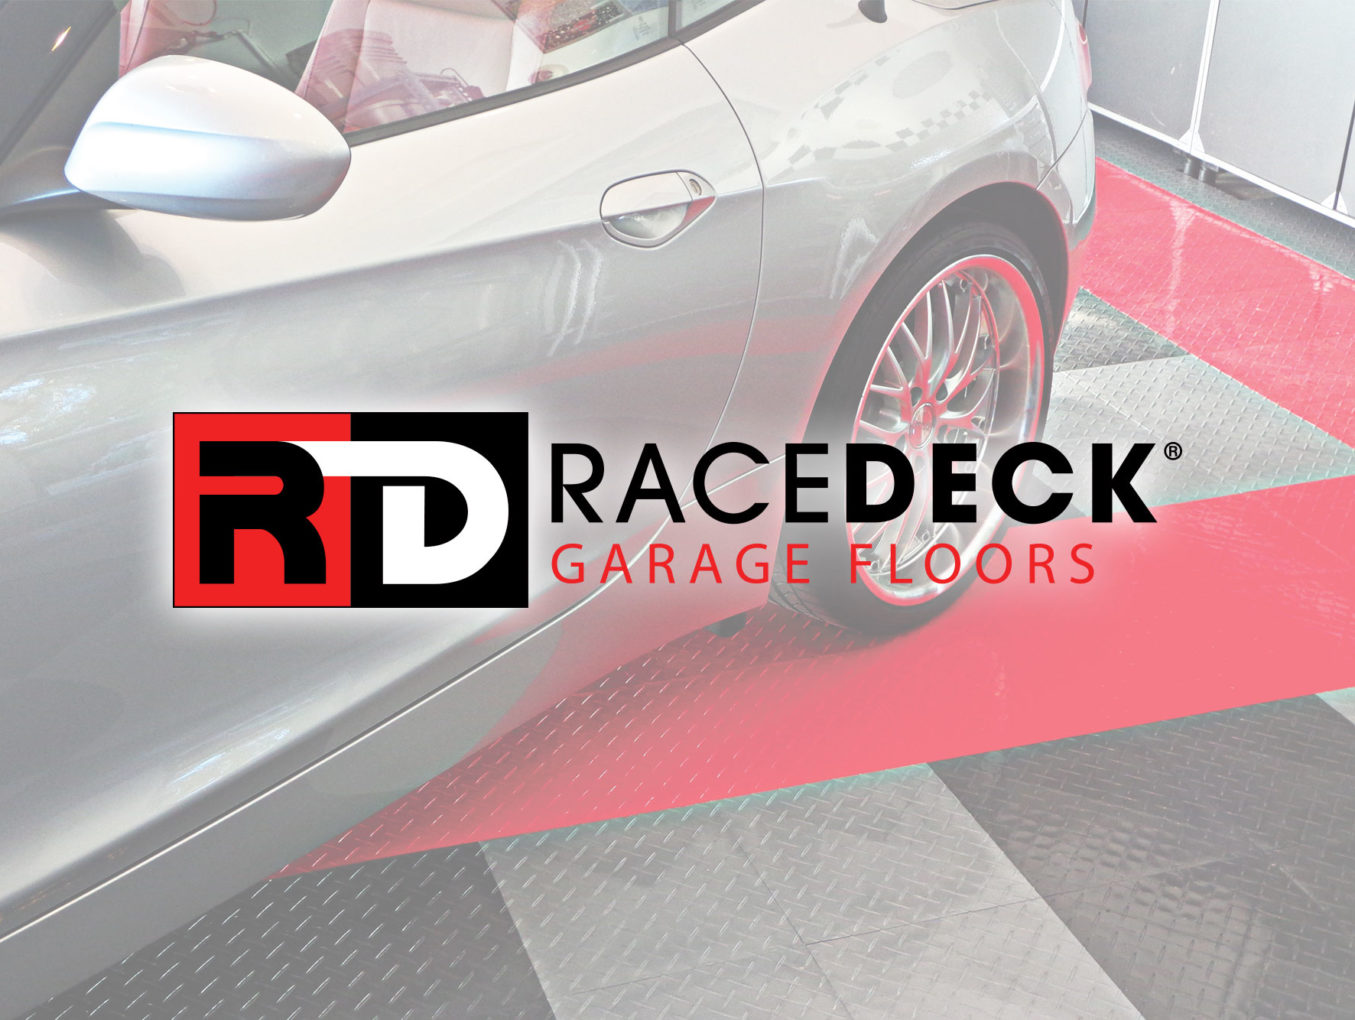 RaceDeck Floors